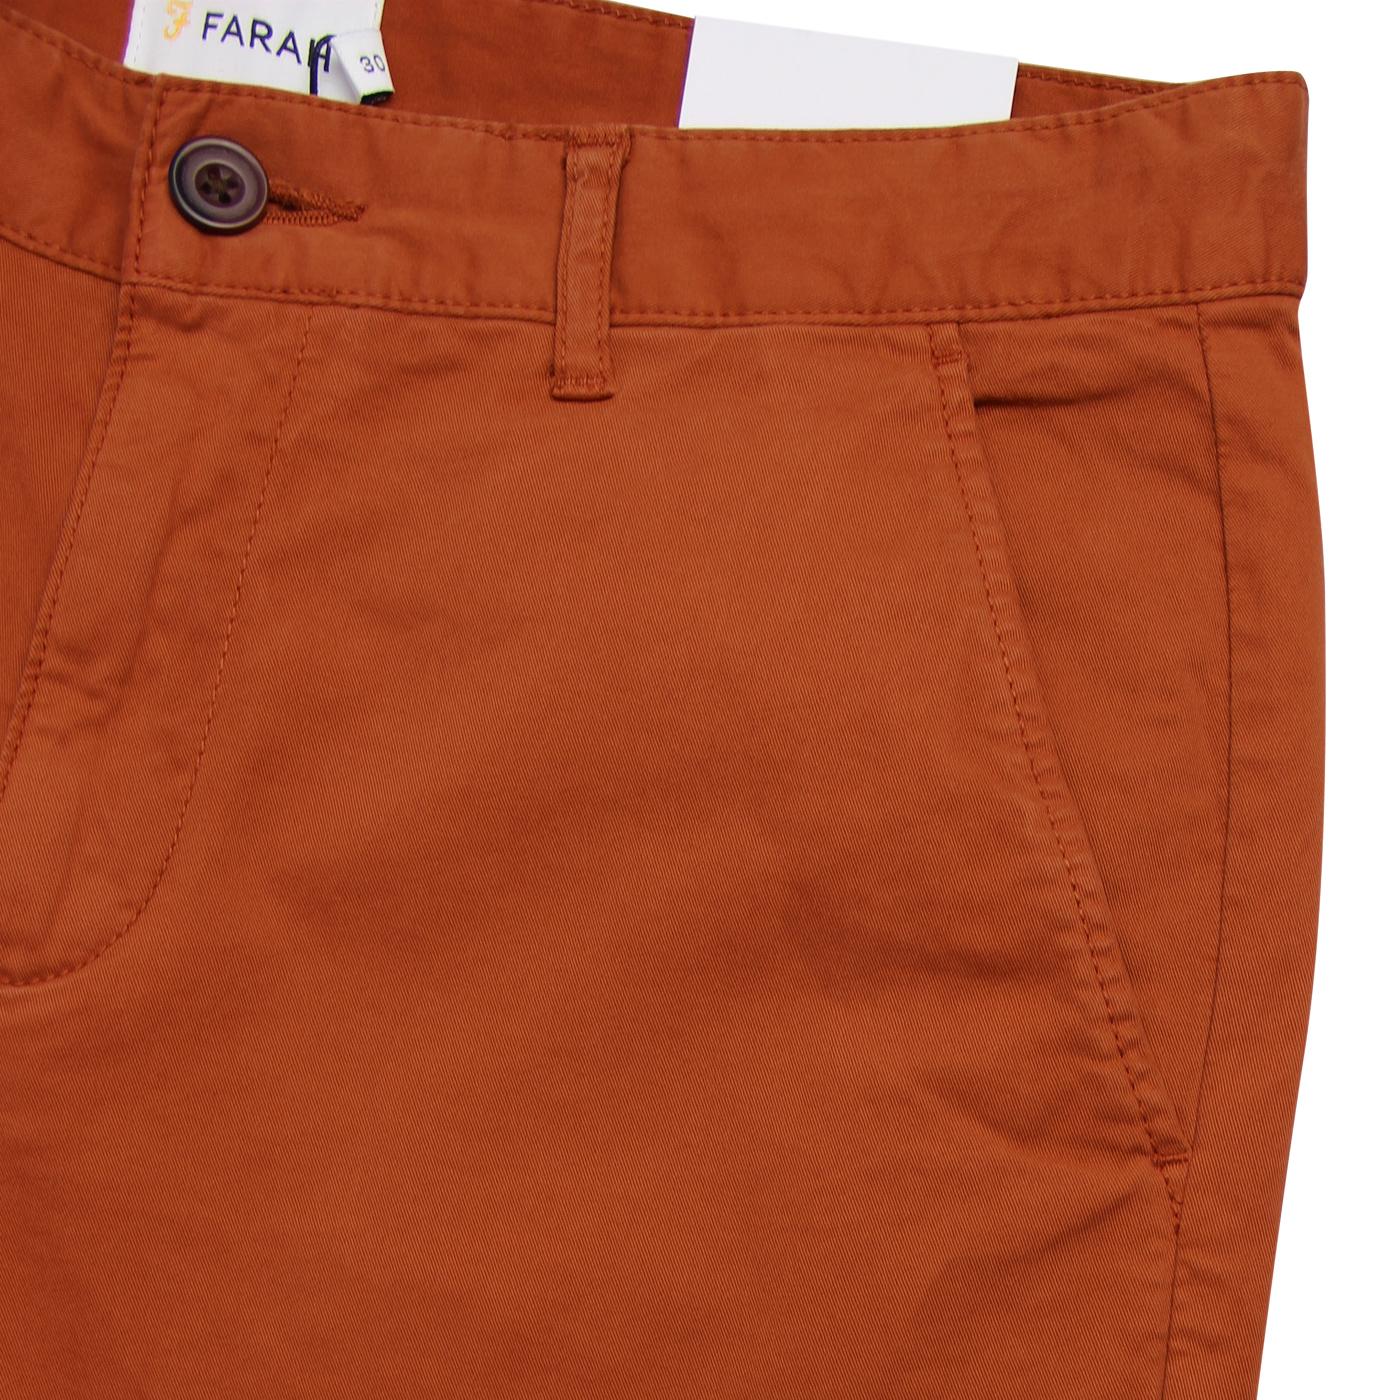 FARAH Hawk Men's Retro Cotton Twill Chino Shorts in Goldfish